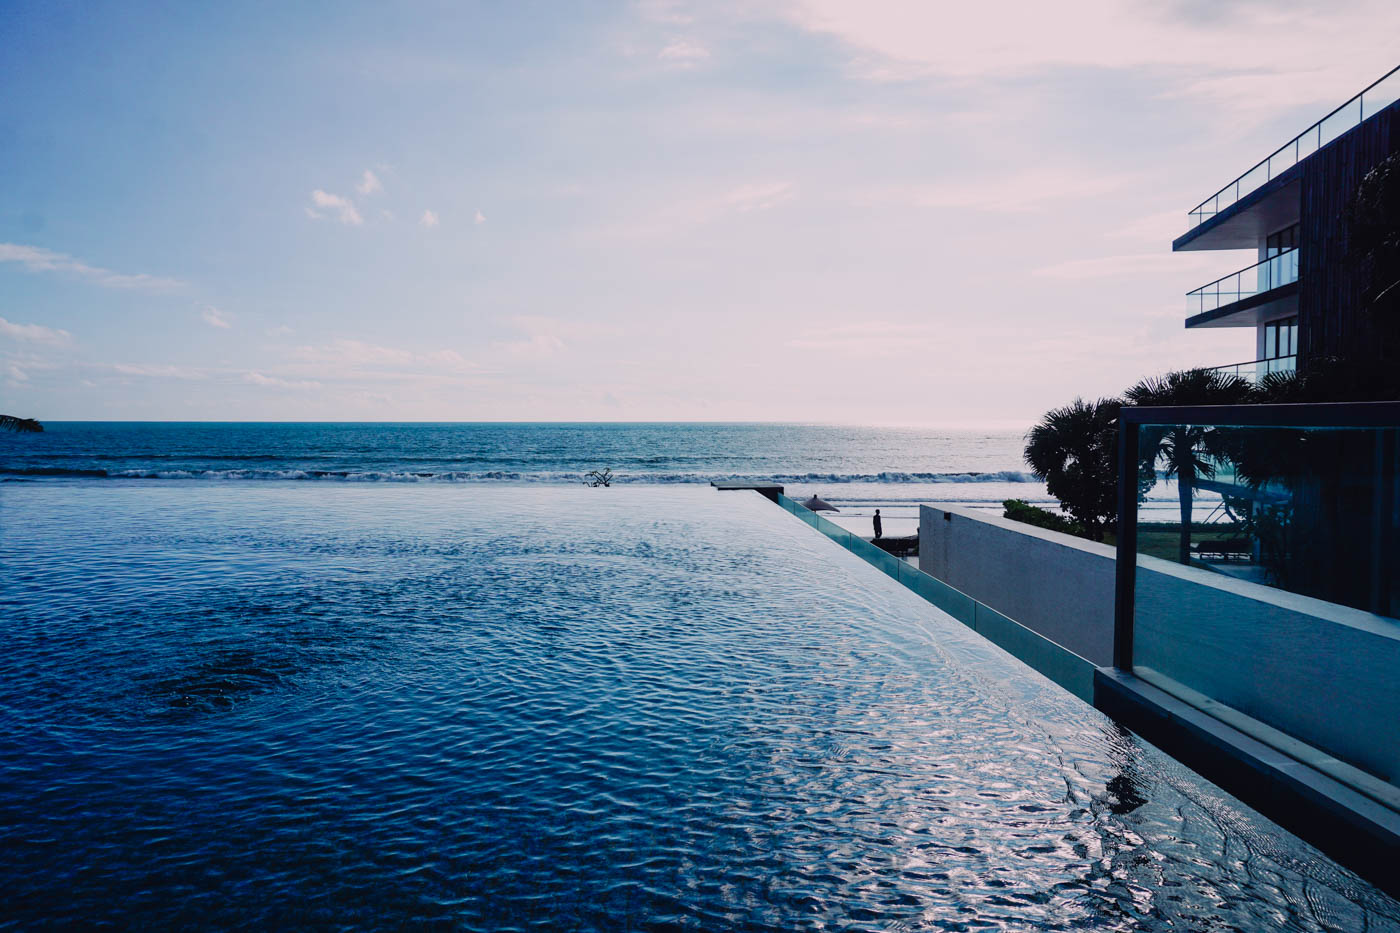 Alila Seminyak Bali, Bali'nin en iyi oteli #bali #luxury #luxuryhotels